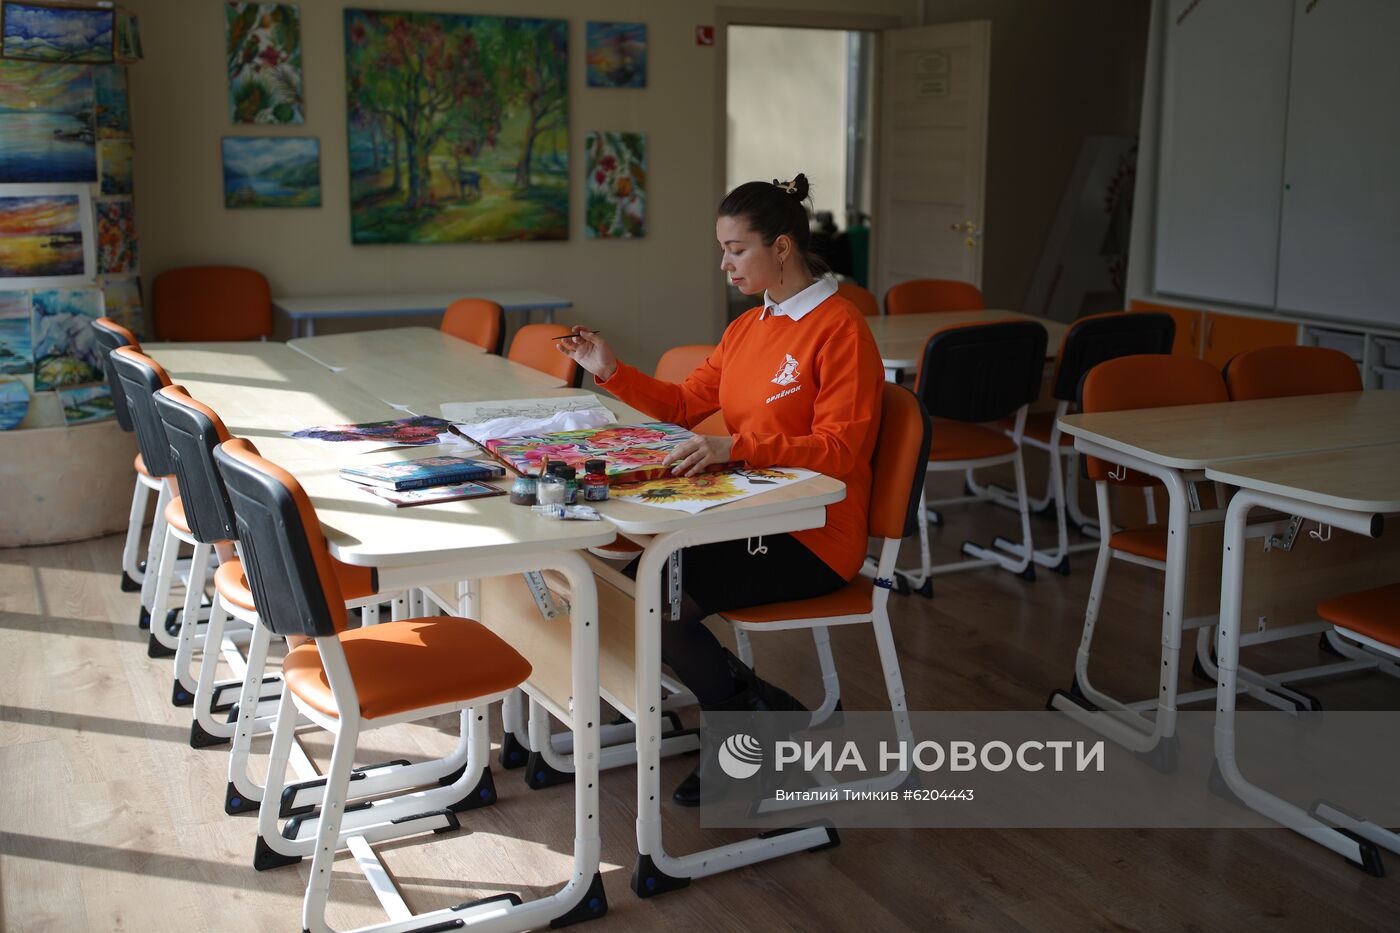 Всероссийский детский центр "Орленок" впервые отменил смену из-за коронавируса